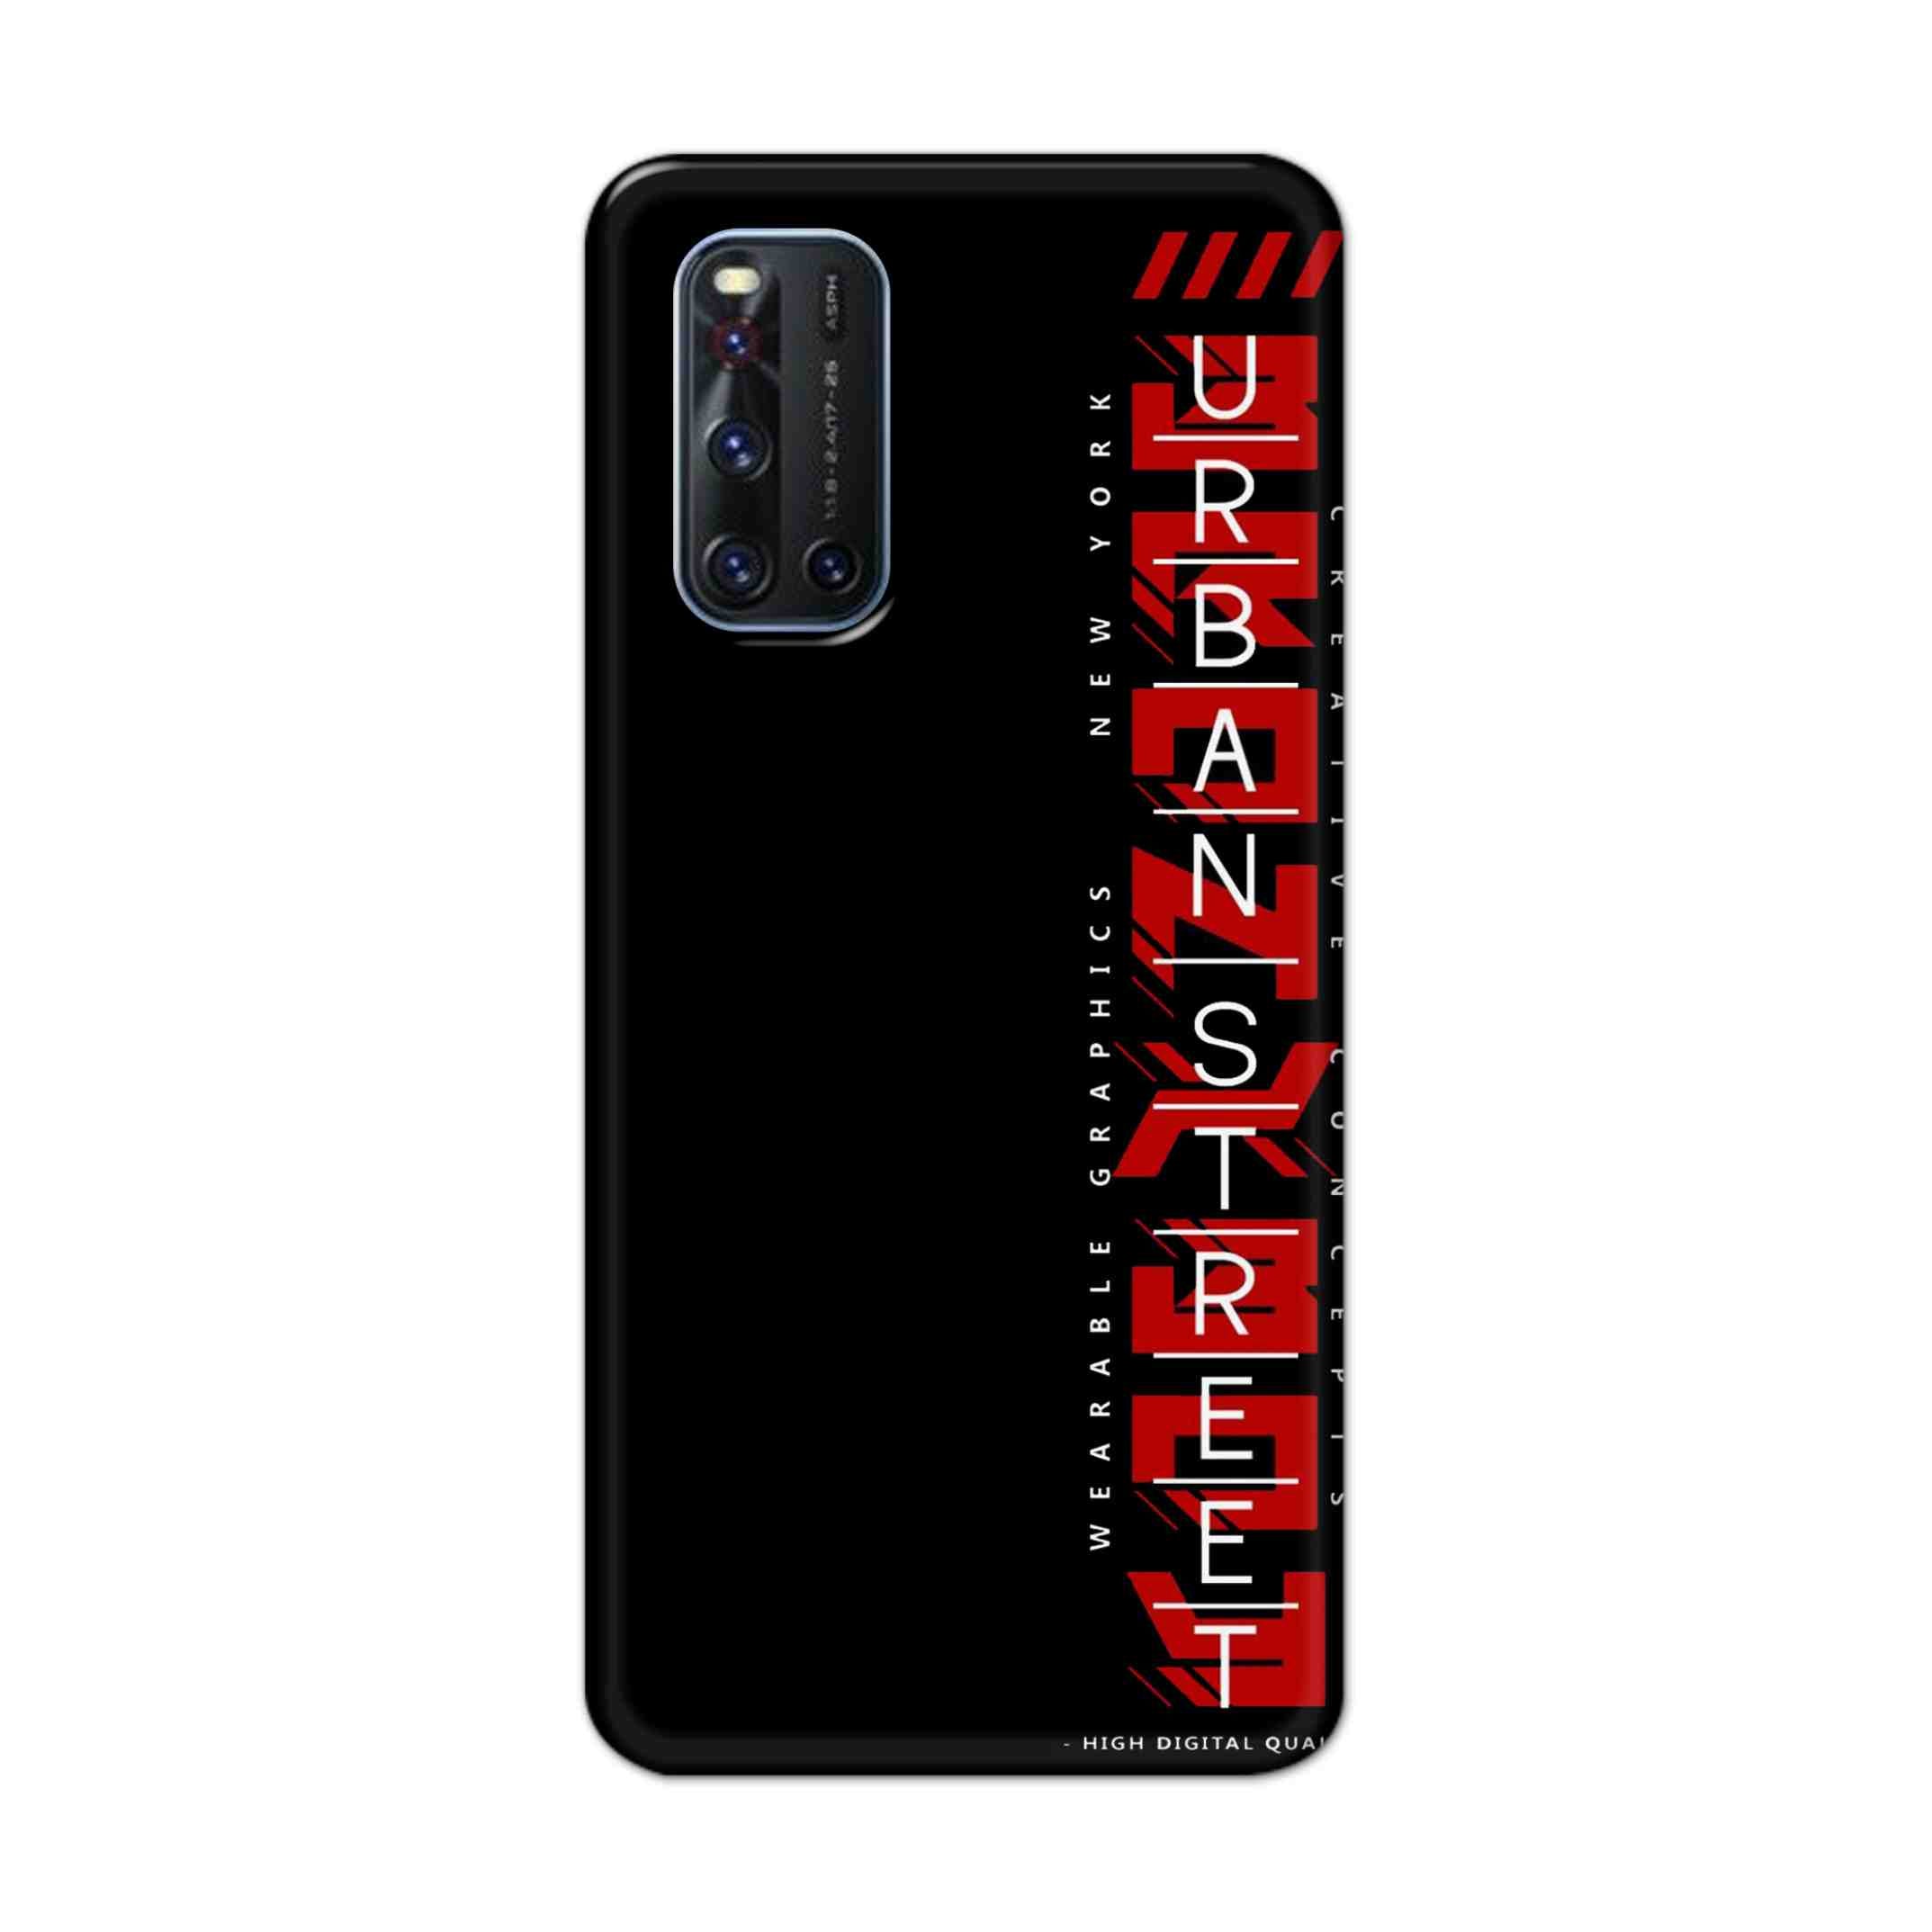 Buy Urban Street Hard Back Mobile Phone Case Cover For VivoV19 Online